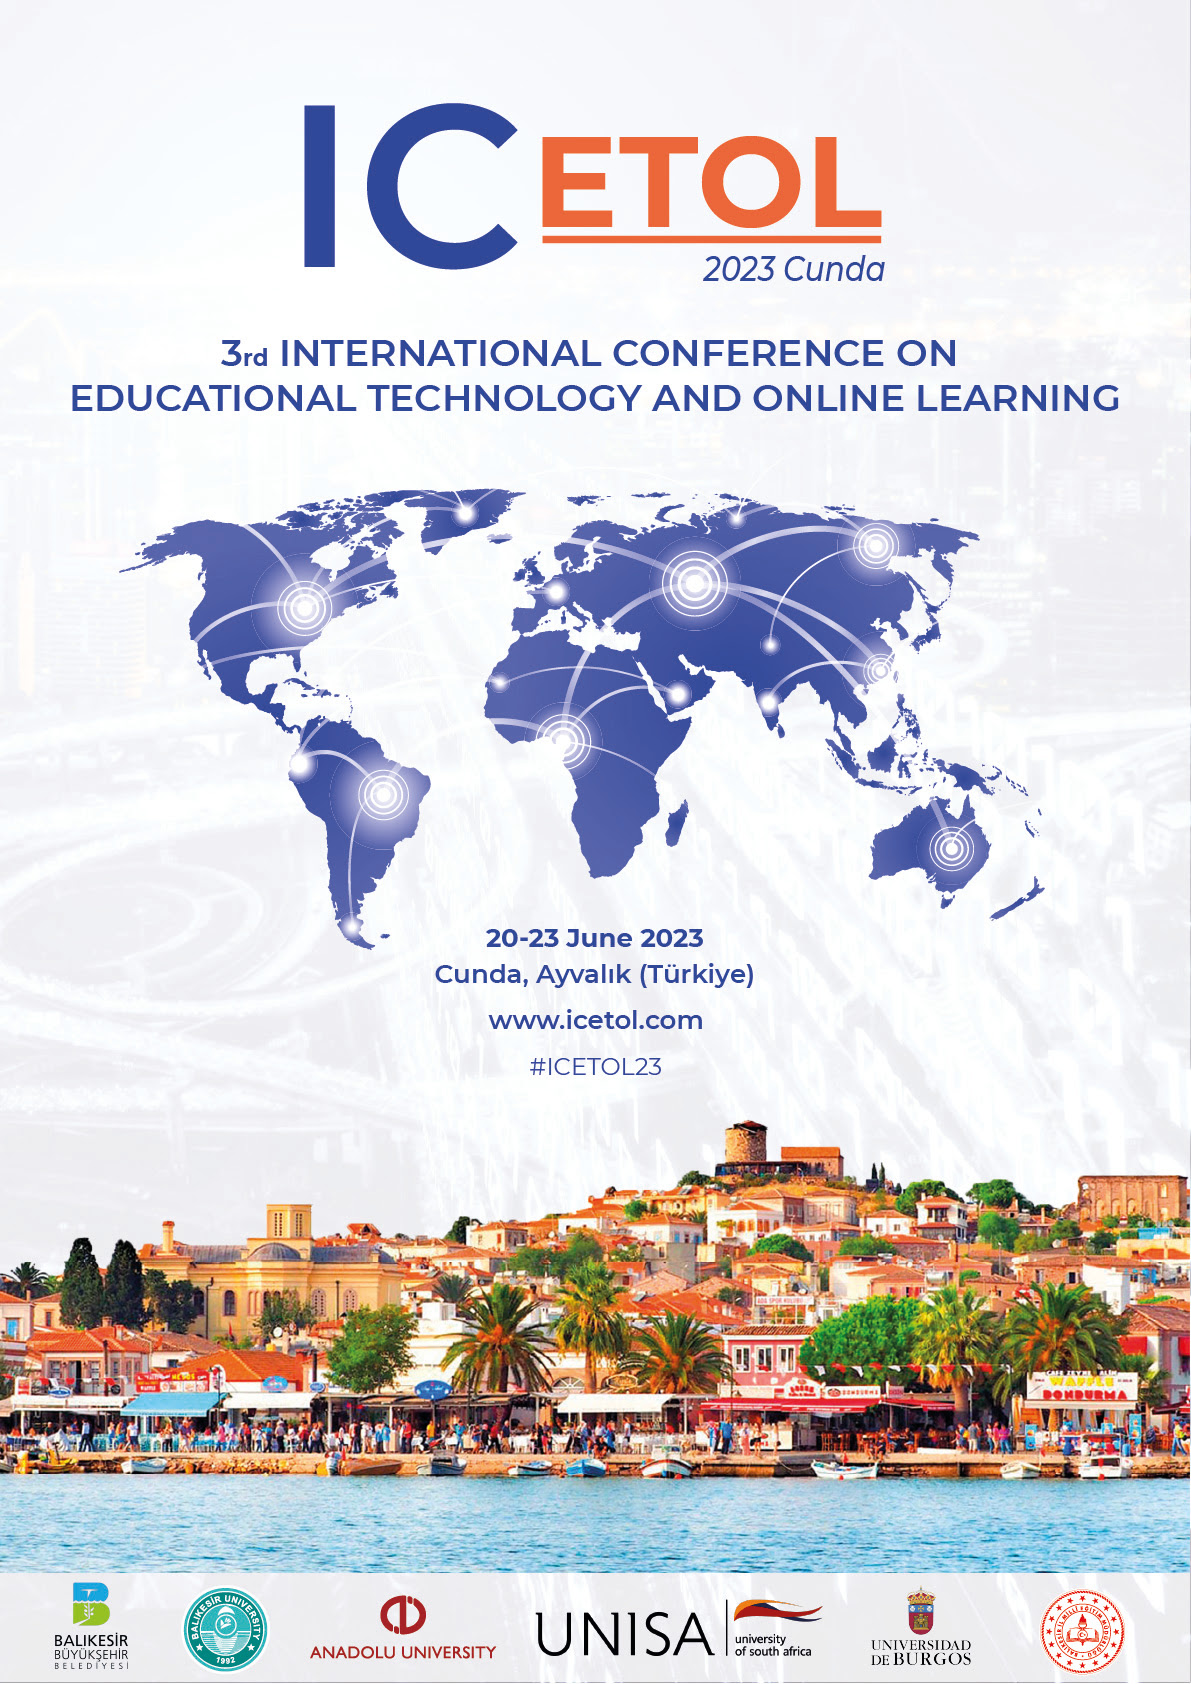 ICETOL: Internasjonal konferanse om pedagogisk teknologi og nettbasert læring